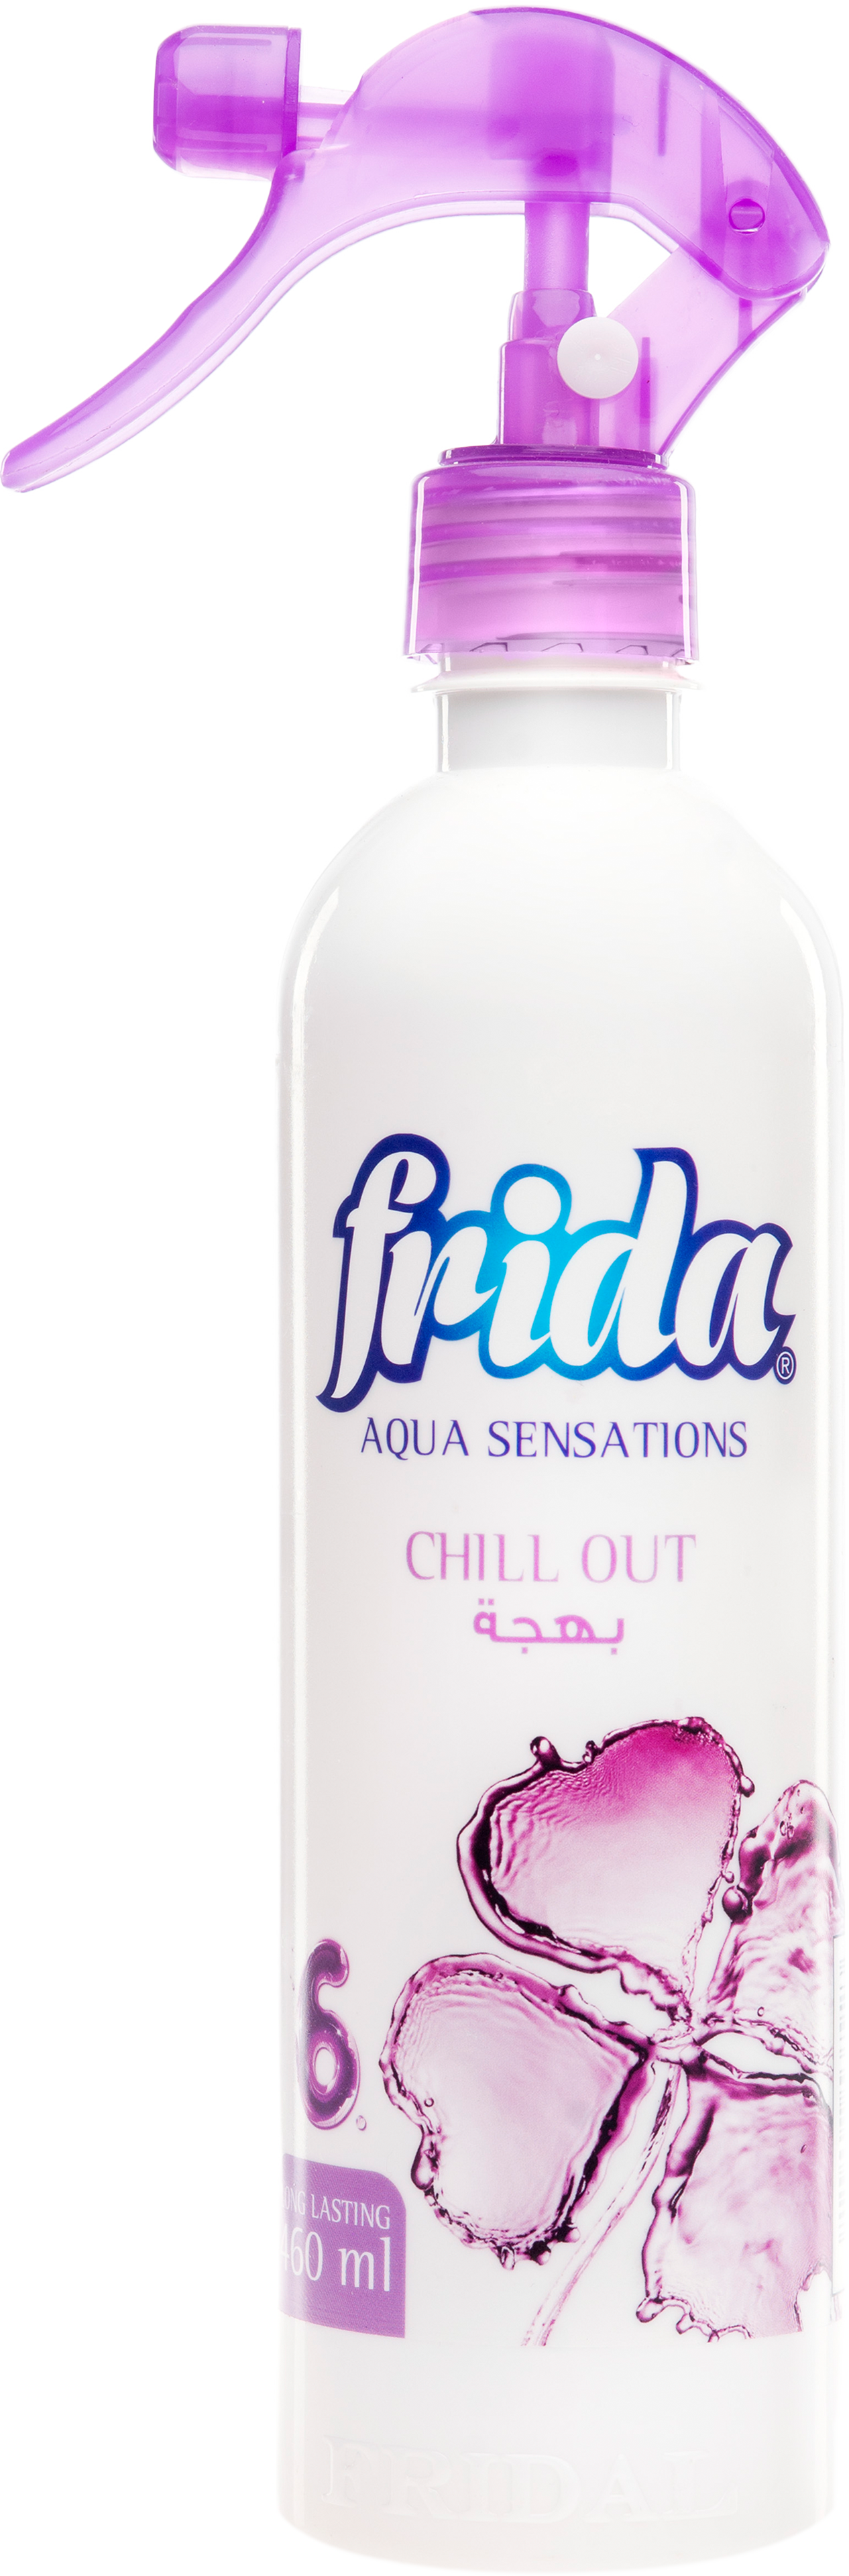 Aqua Sensations "Chill out"